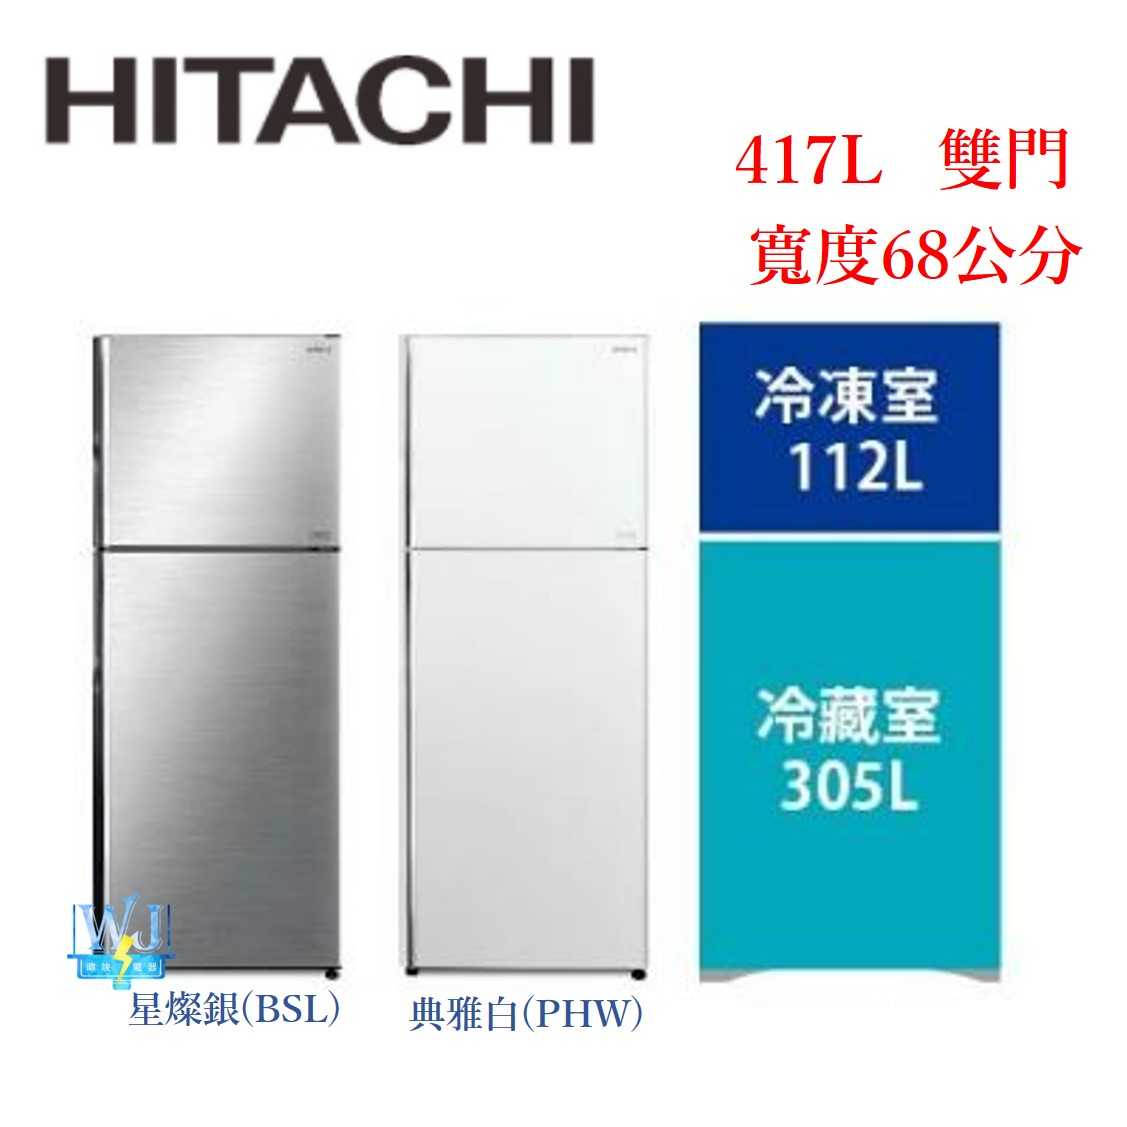 有現貨【獨家折扣碼】HITACHI 日立 R-VX429 雙門 冰箱 417公升 RVX429 變頻冰箱 取代RV409